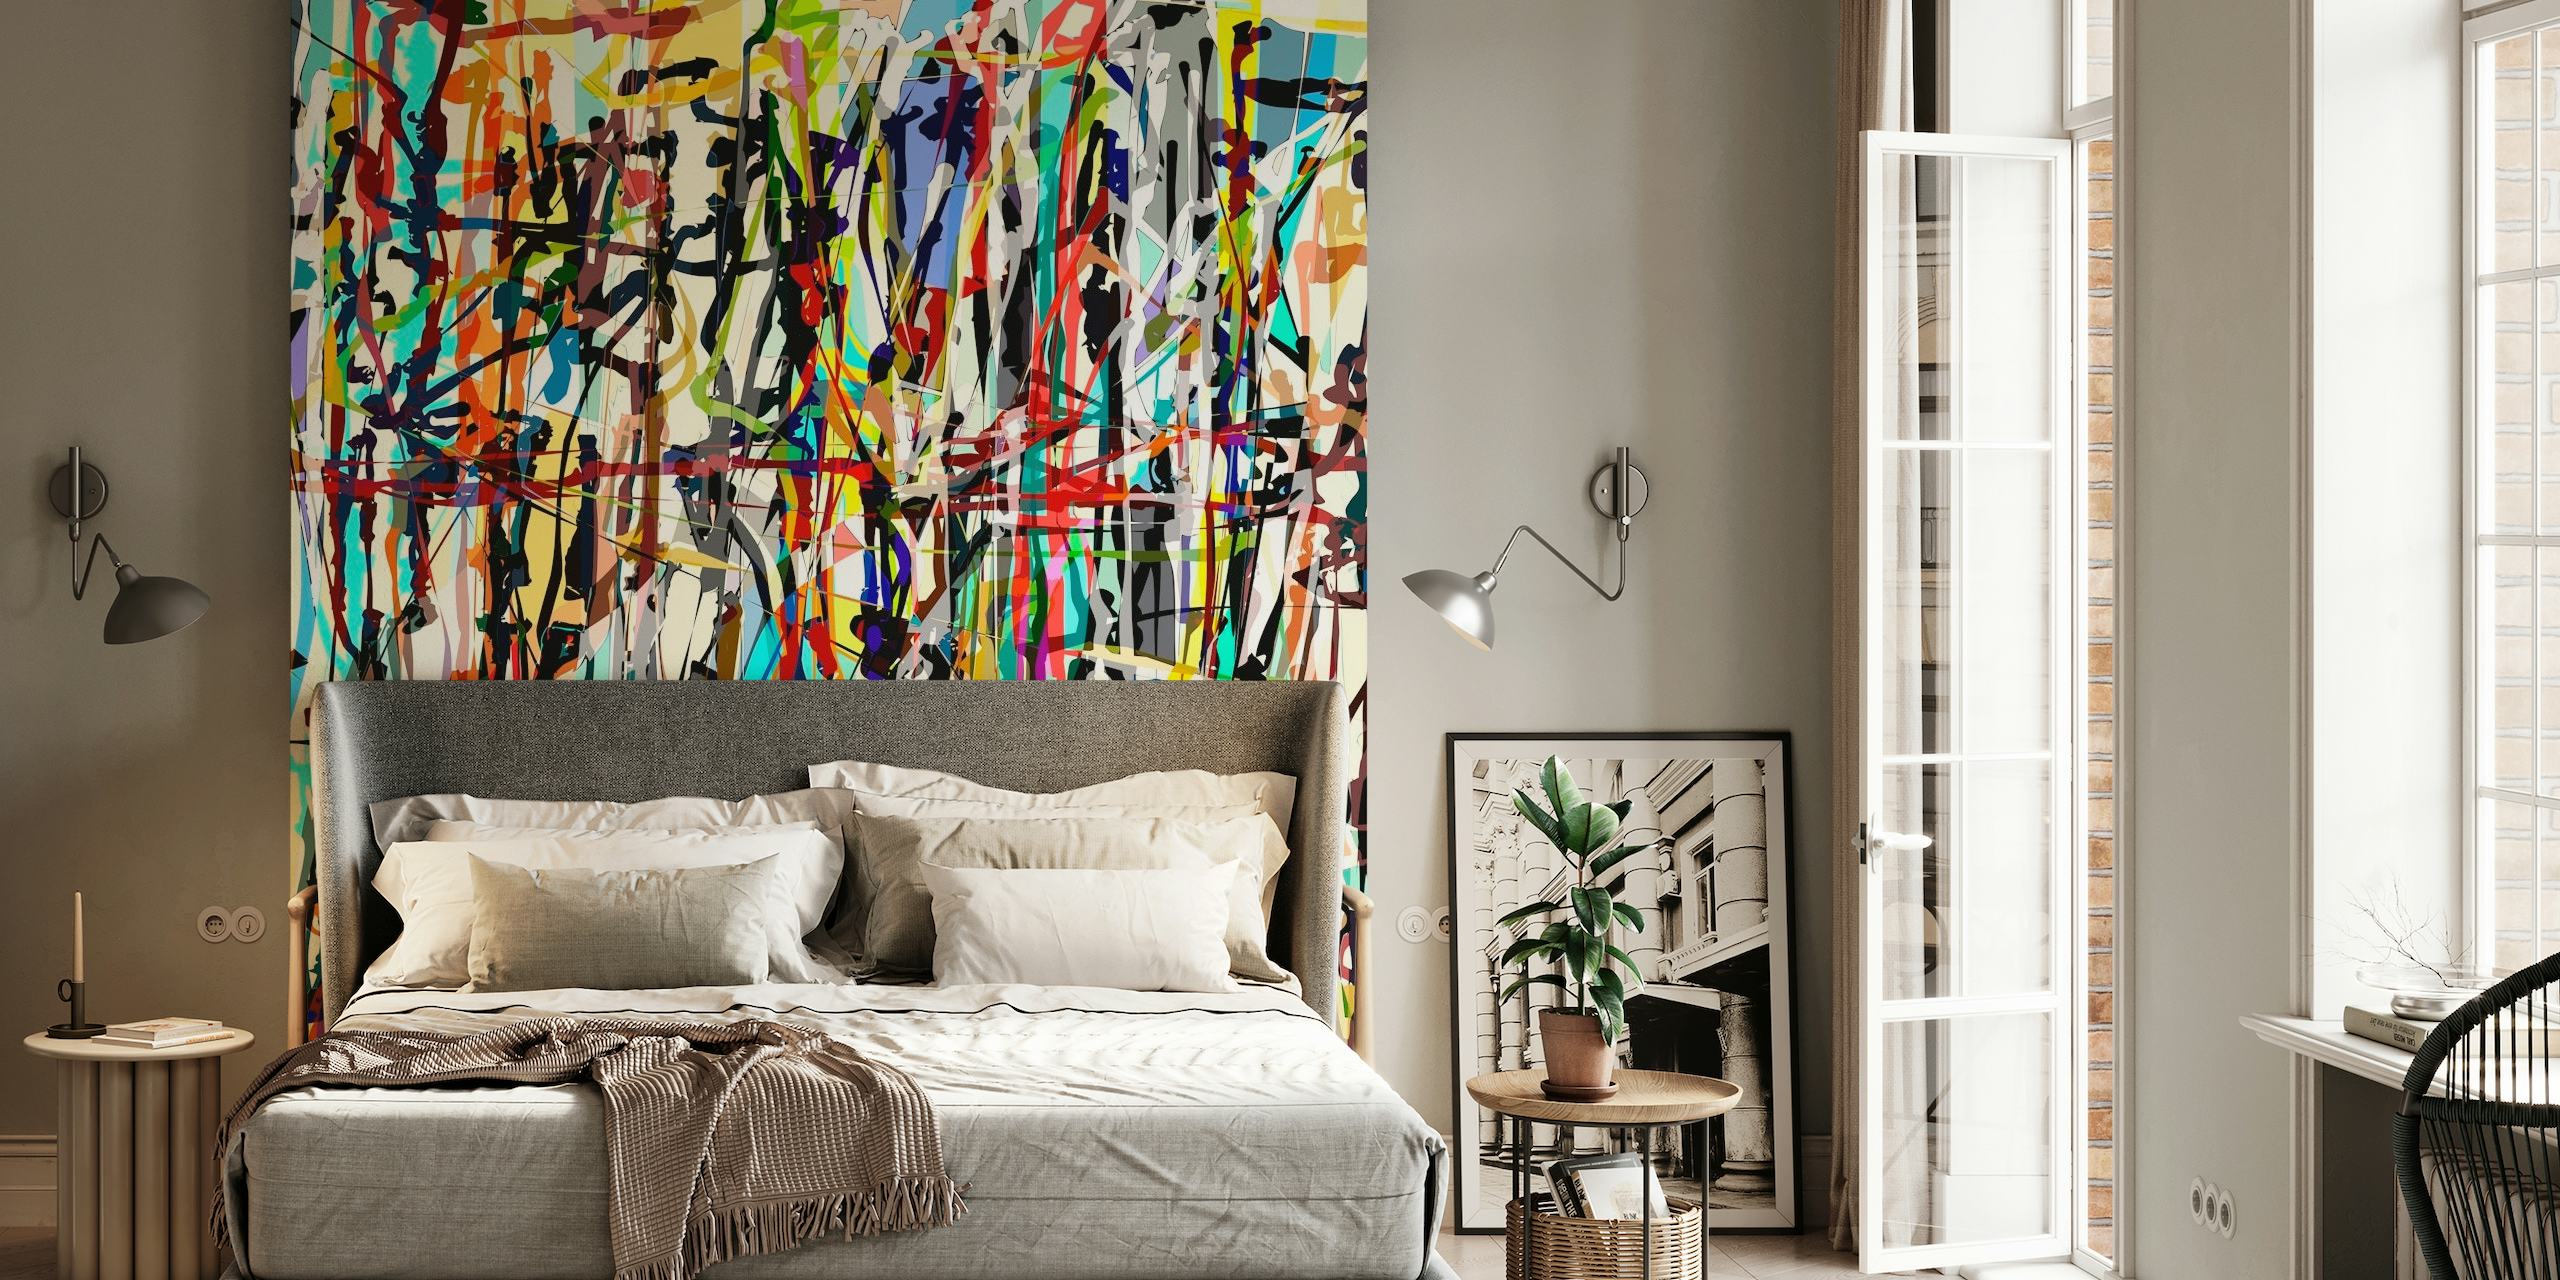 Abstraktní nástěnná malba inspirovaná Pollockem s barevnou směsí živých stříkanců a tahů štětcem.